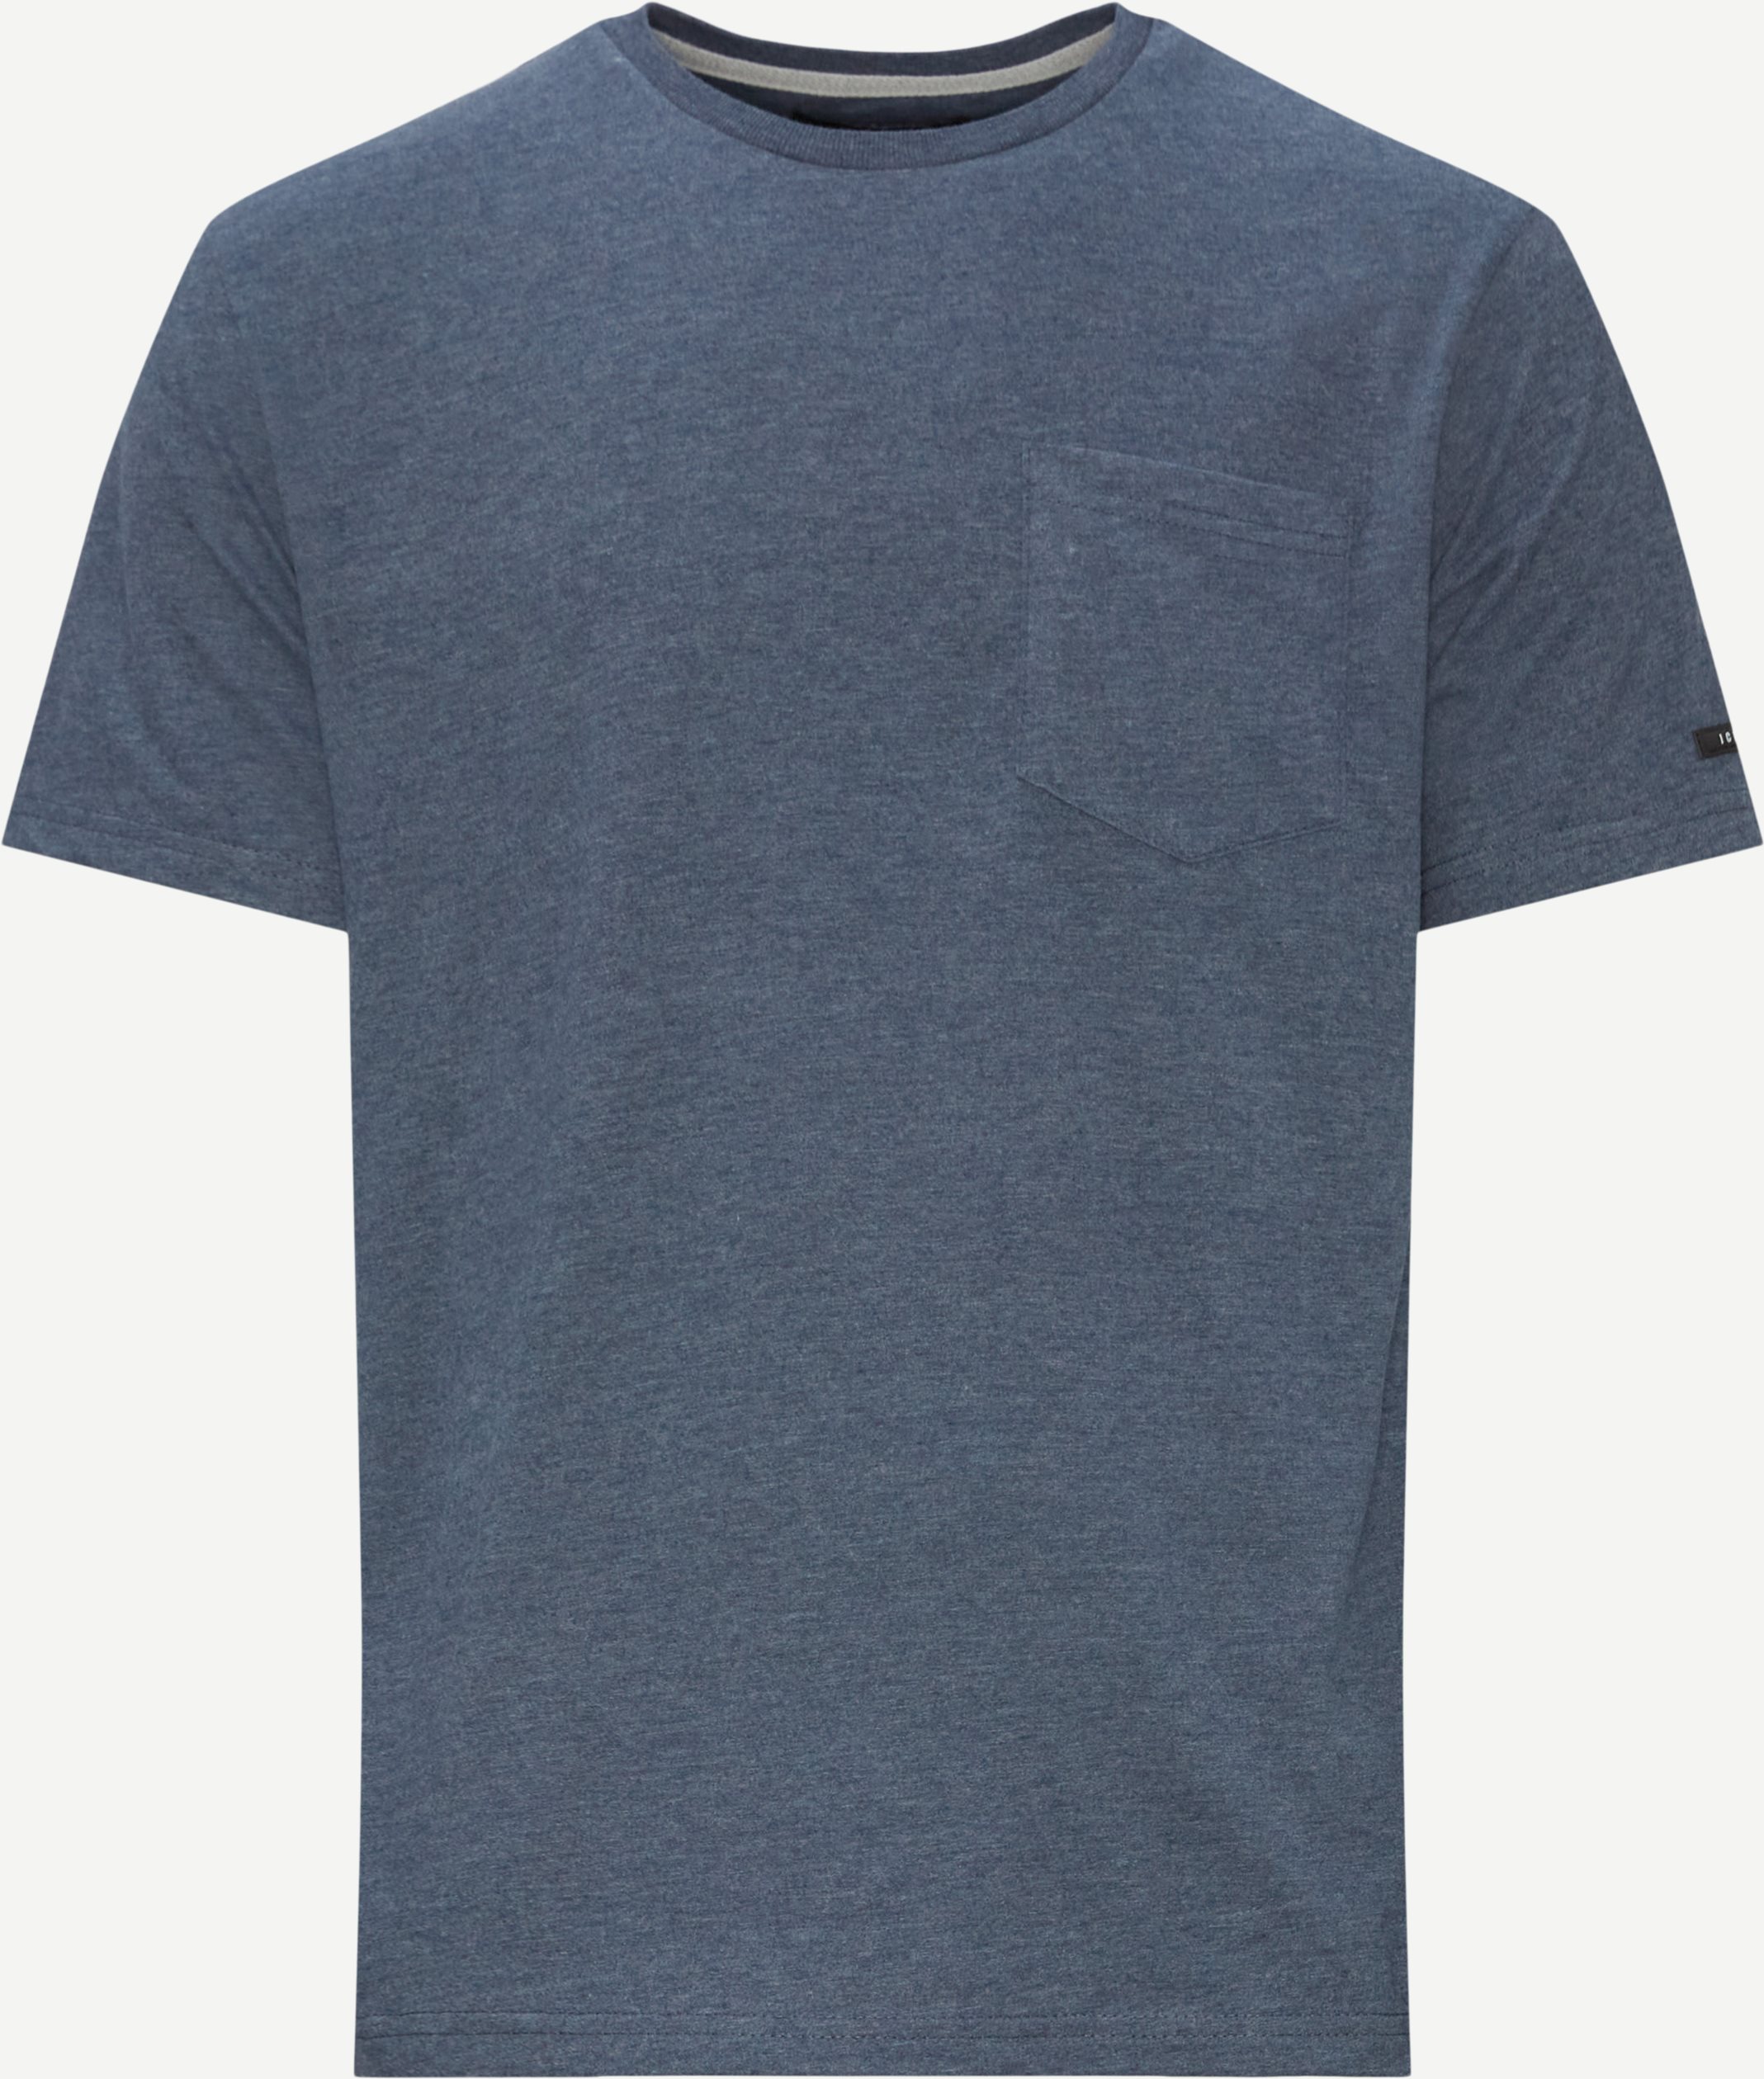 Zeus T-shirt - T-shirts - Regular fit - Denim